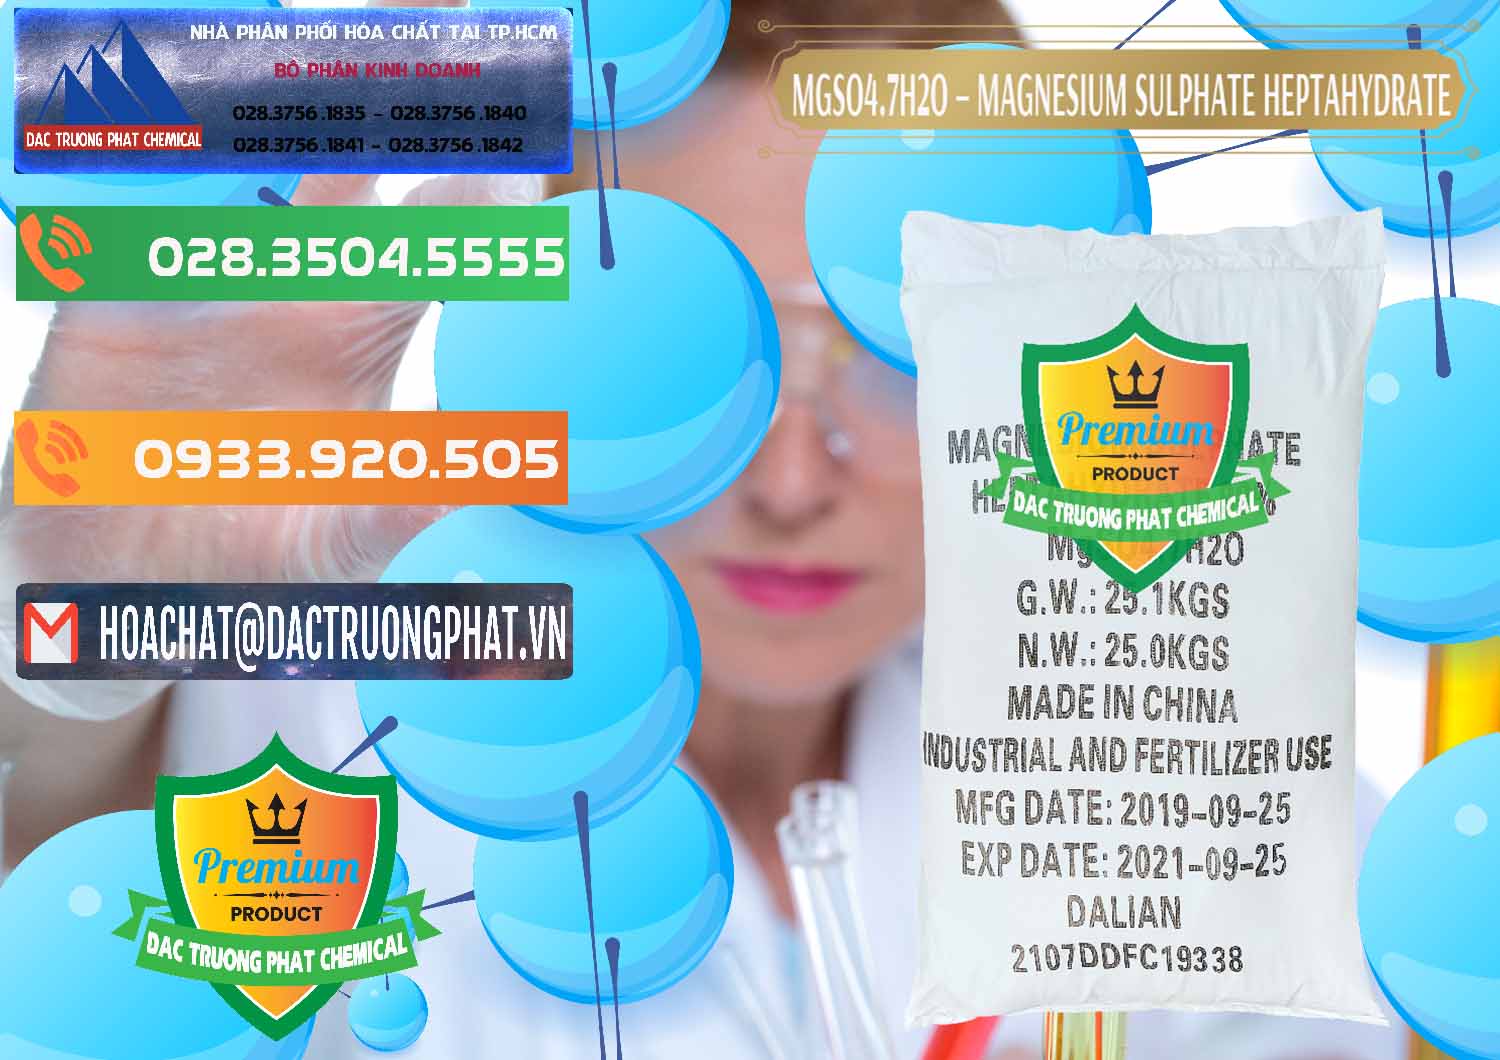 Cty bán ( phân phối ) MGSO4.7H2O – Magnesium Sulphate Heptahydrate Trung Quốc China - 0094 - Cty phân phối và cung cấp hóa chất tại TP.HCM - hoachatxulynuoc.com.vn